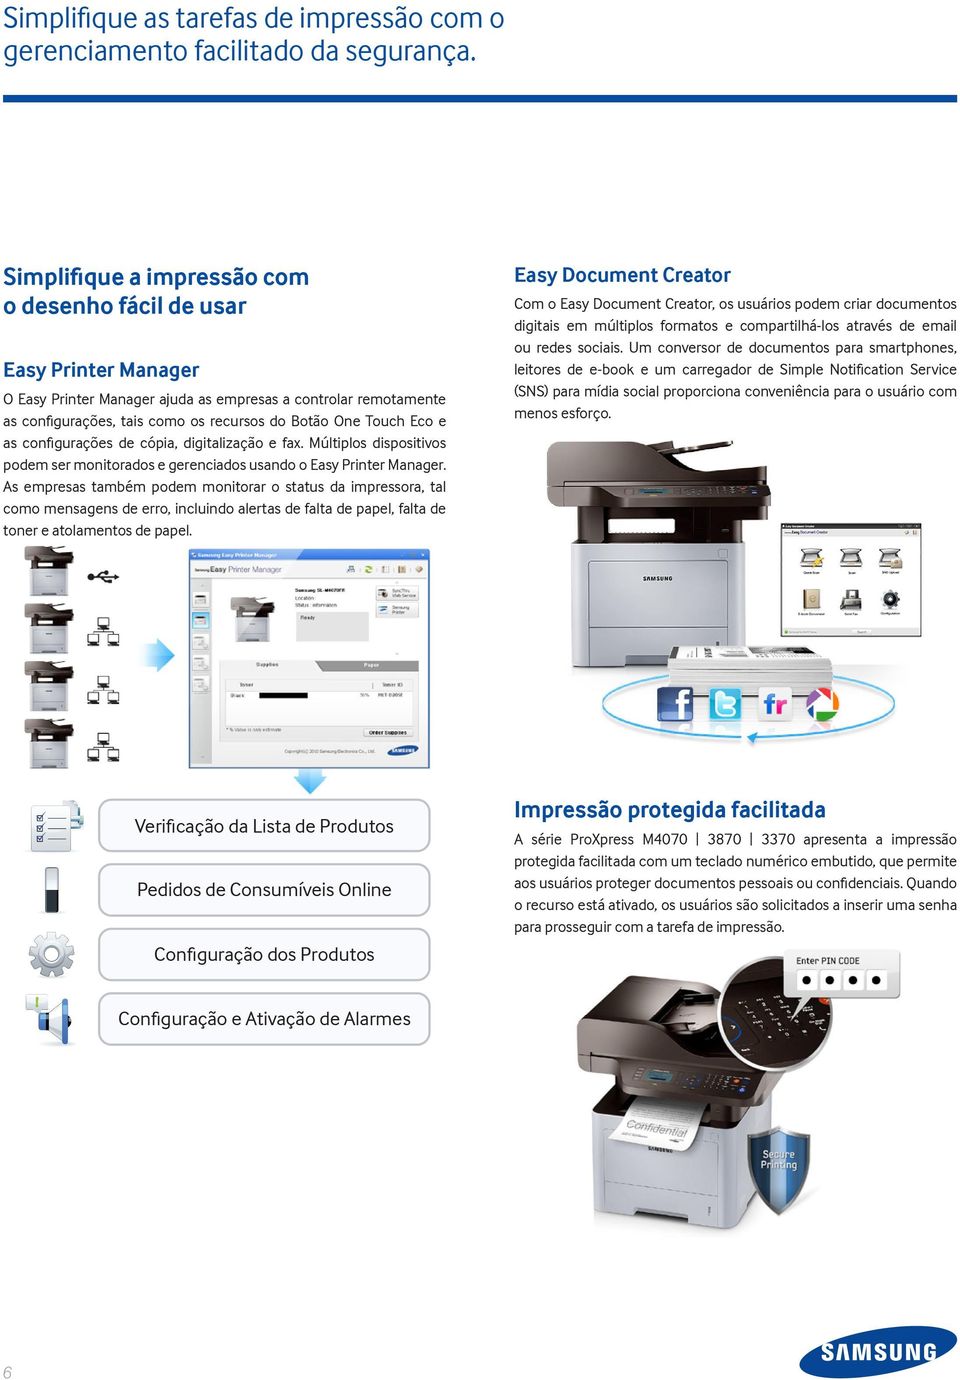 Eco e as configurações de cópia, digitalização e fax. Múltiplos dispositivos podem ser monitorados e gerenciados usando o Easy Printer Manager.